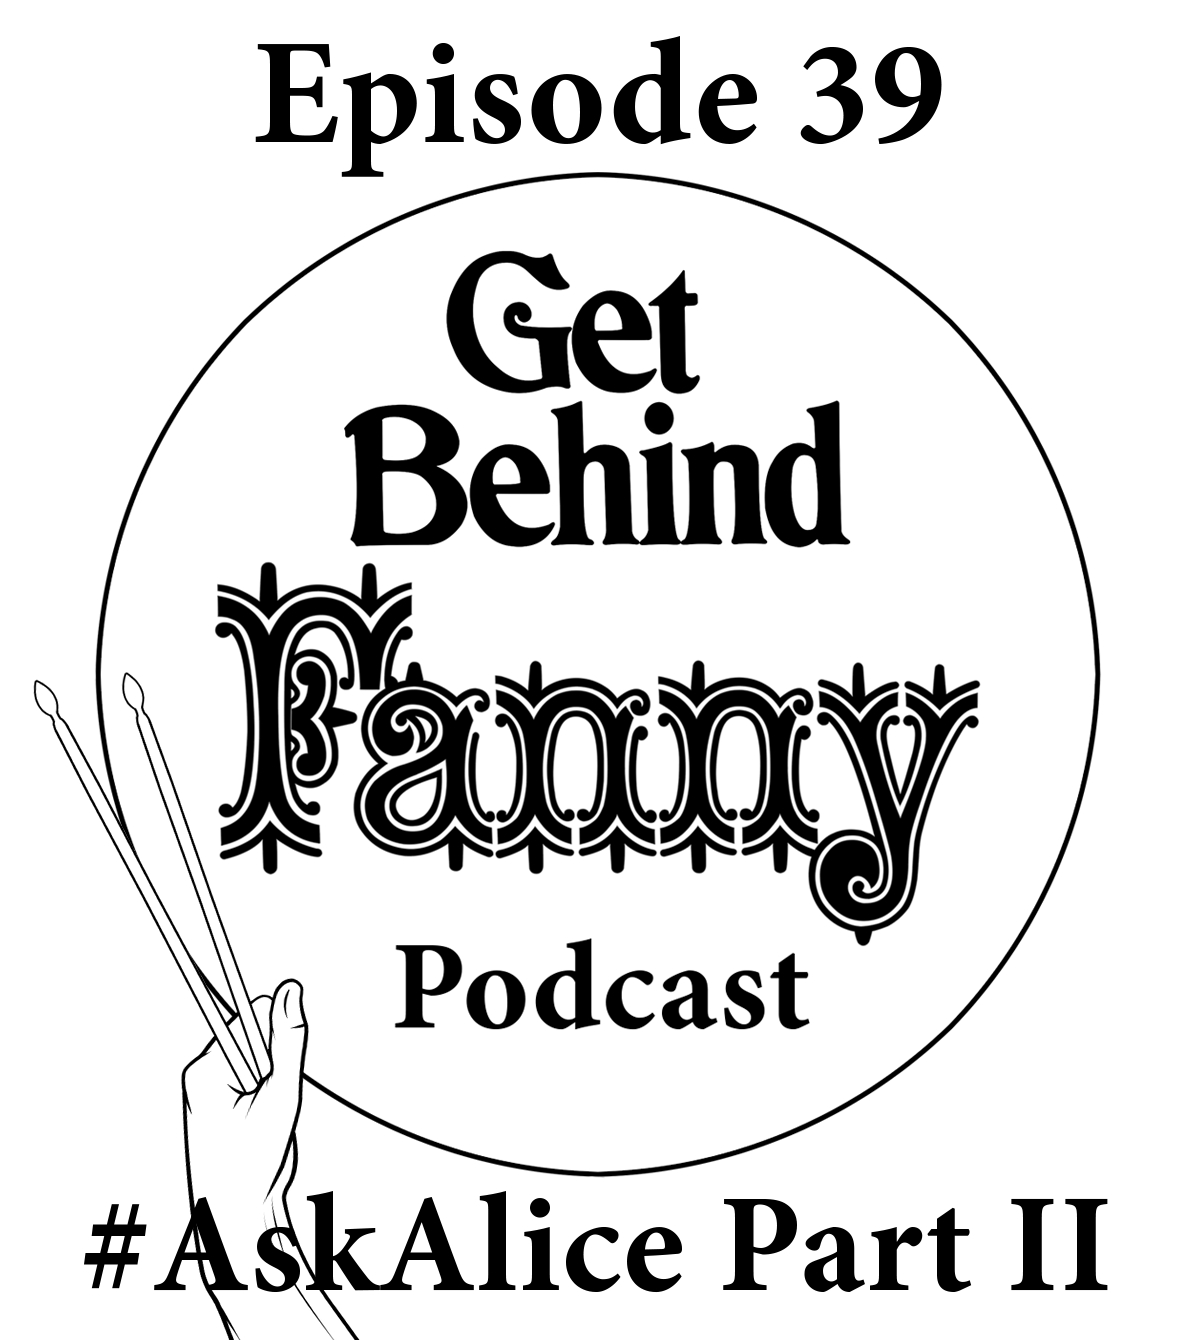 Get Behind Fanny: Episode 39